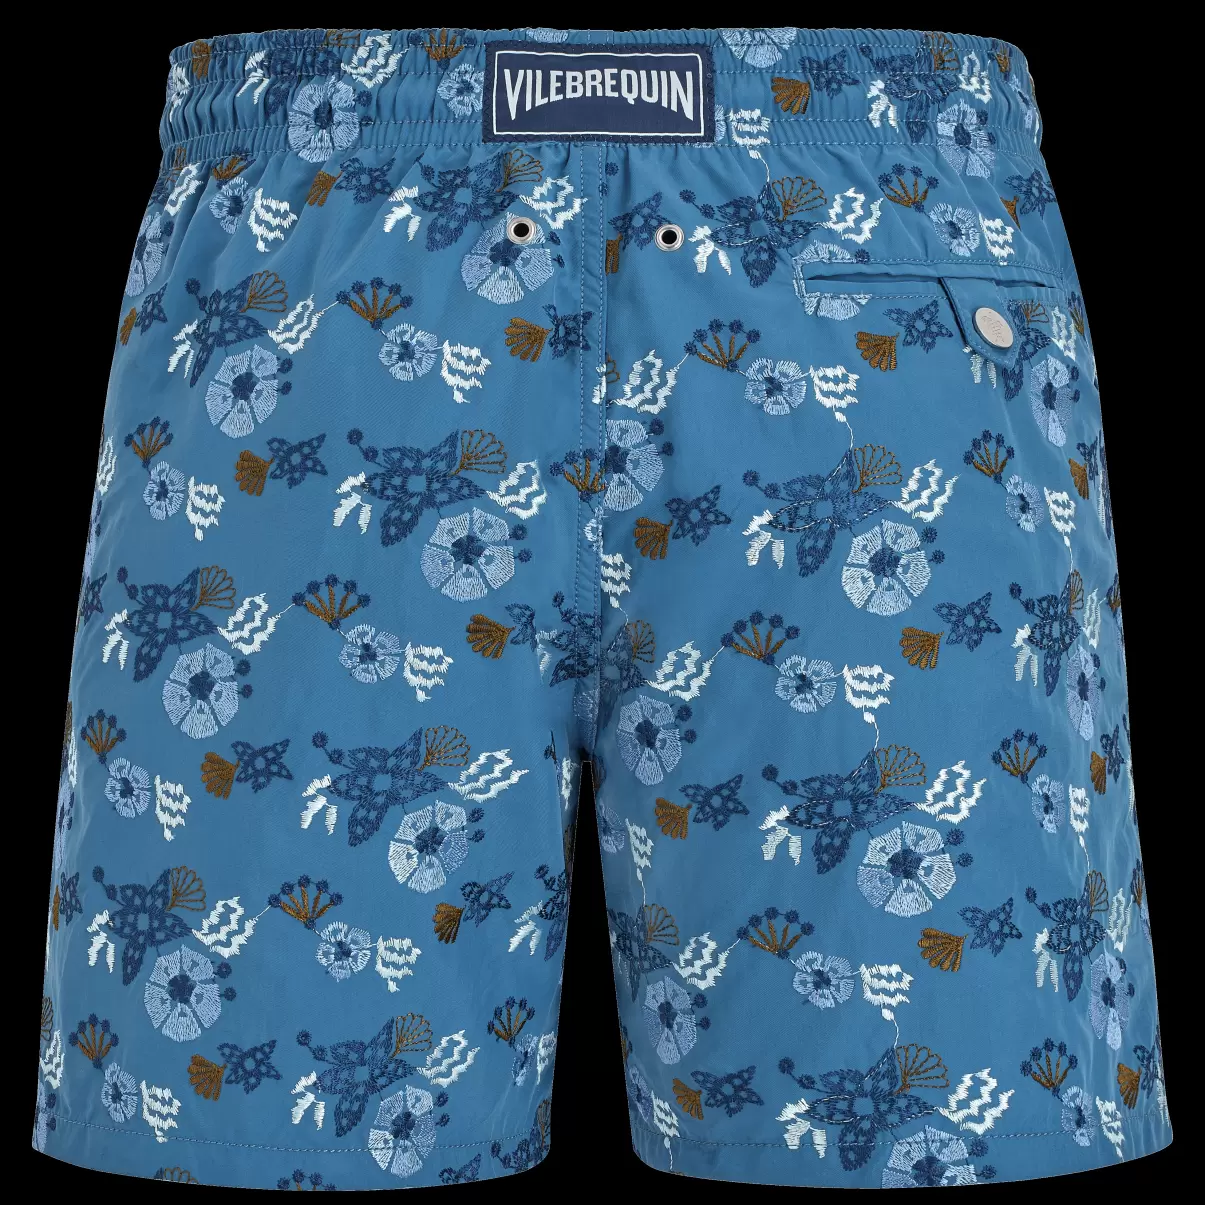 Herren Calanque / Blau Men Swim Shorts Embroidered Flowers And Shells - Limited Edition Bestellung Stickerei Vilebrequin - 1